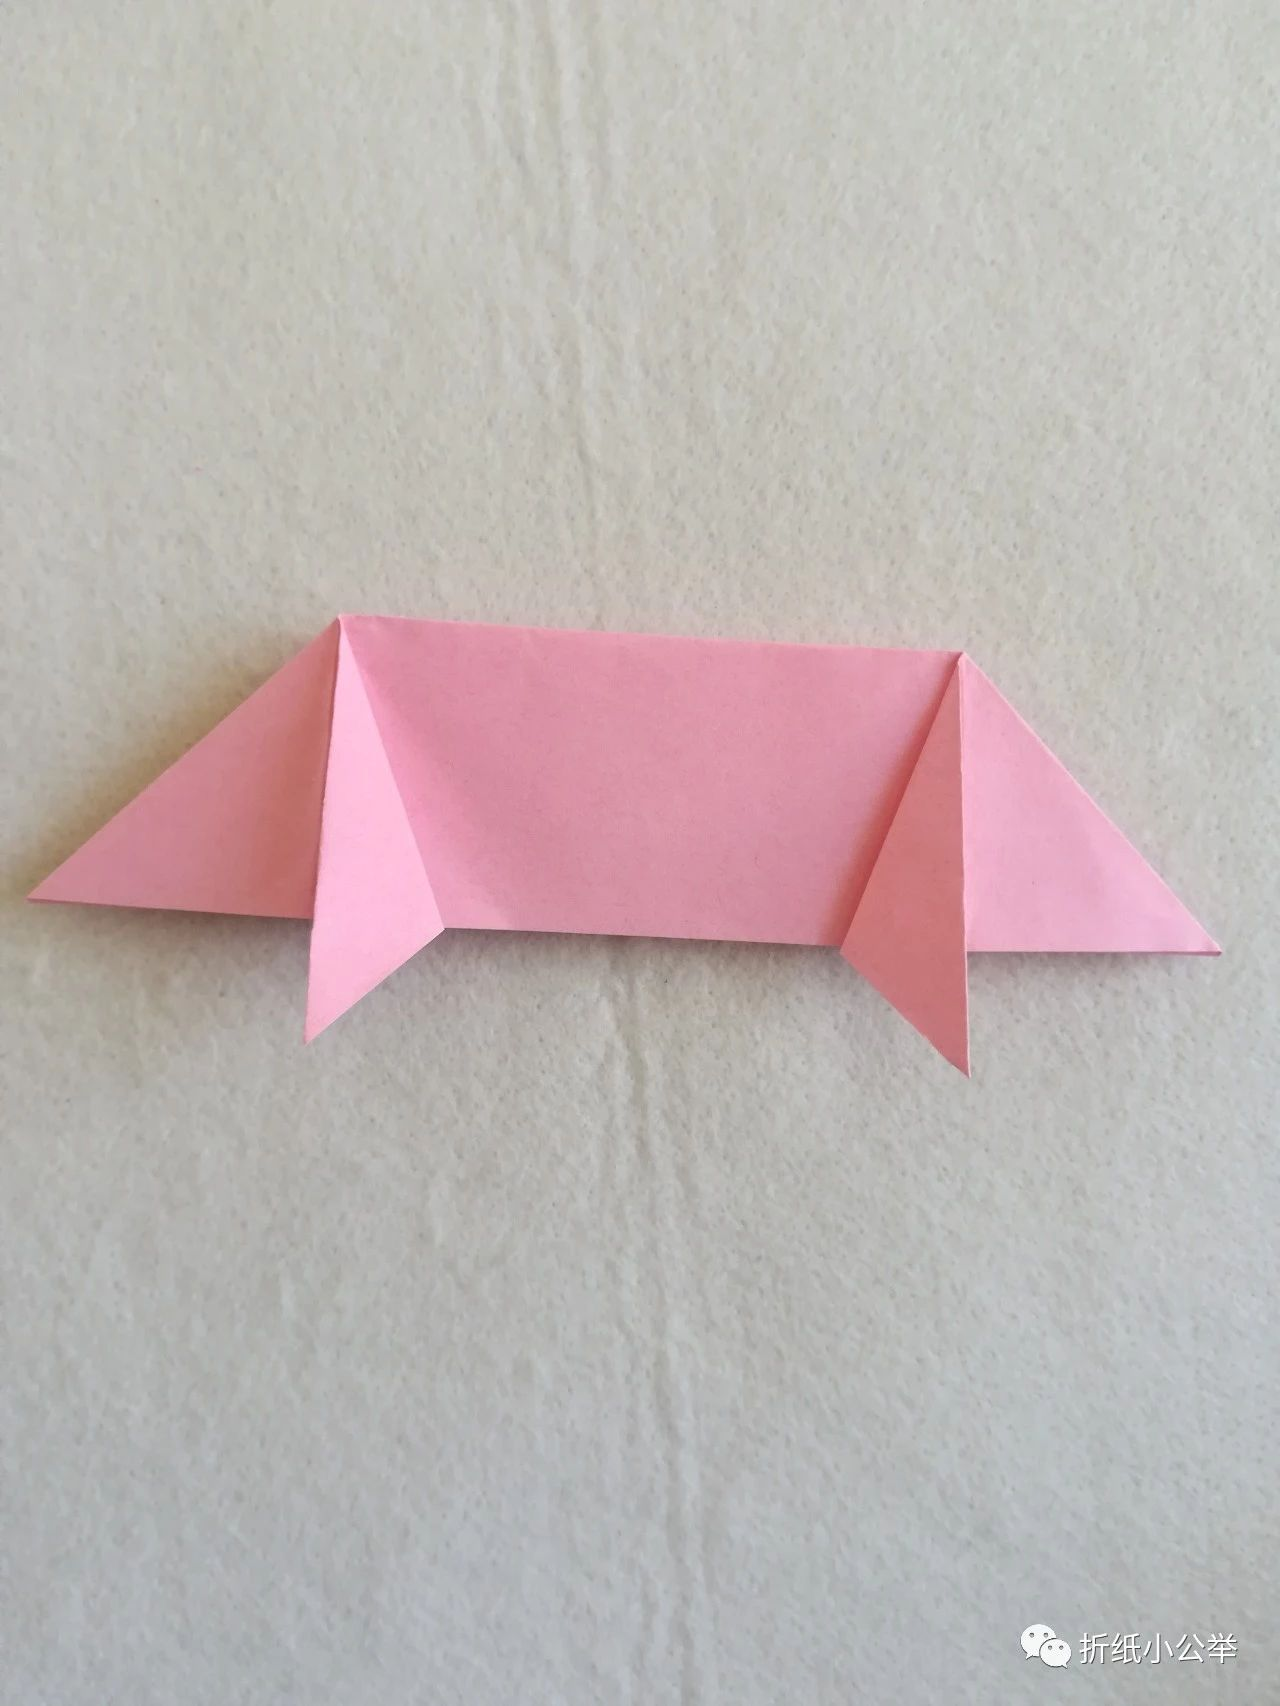 第九步:将折纸翻转,如图折叠出小猪的脚